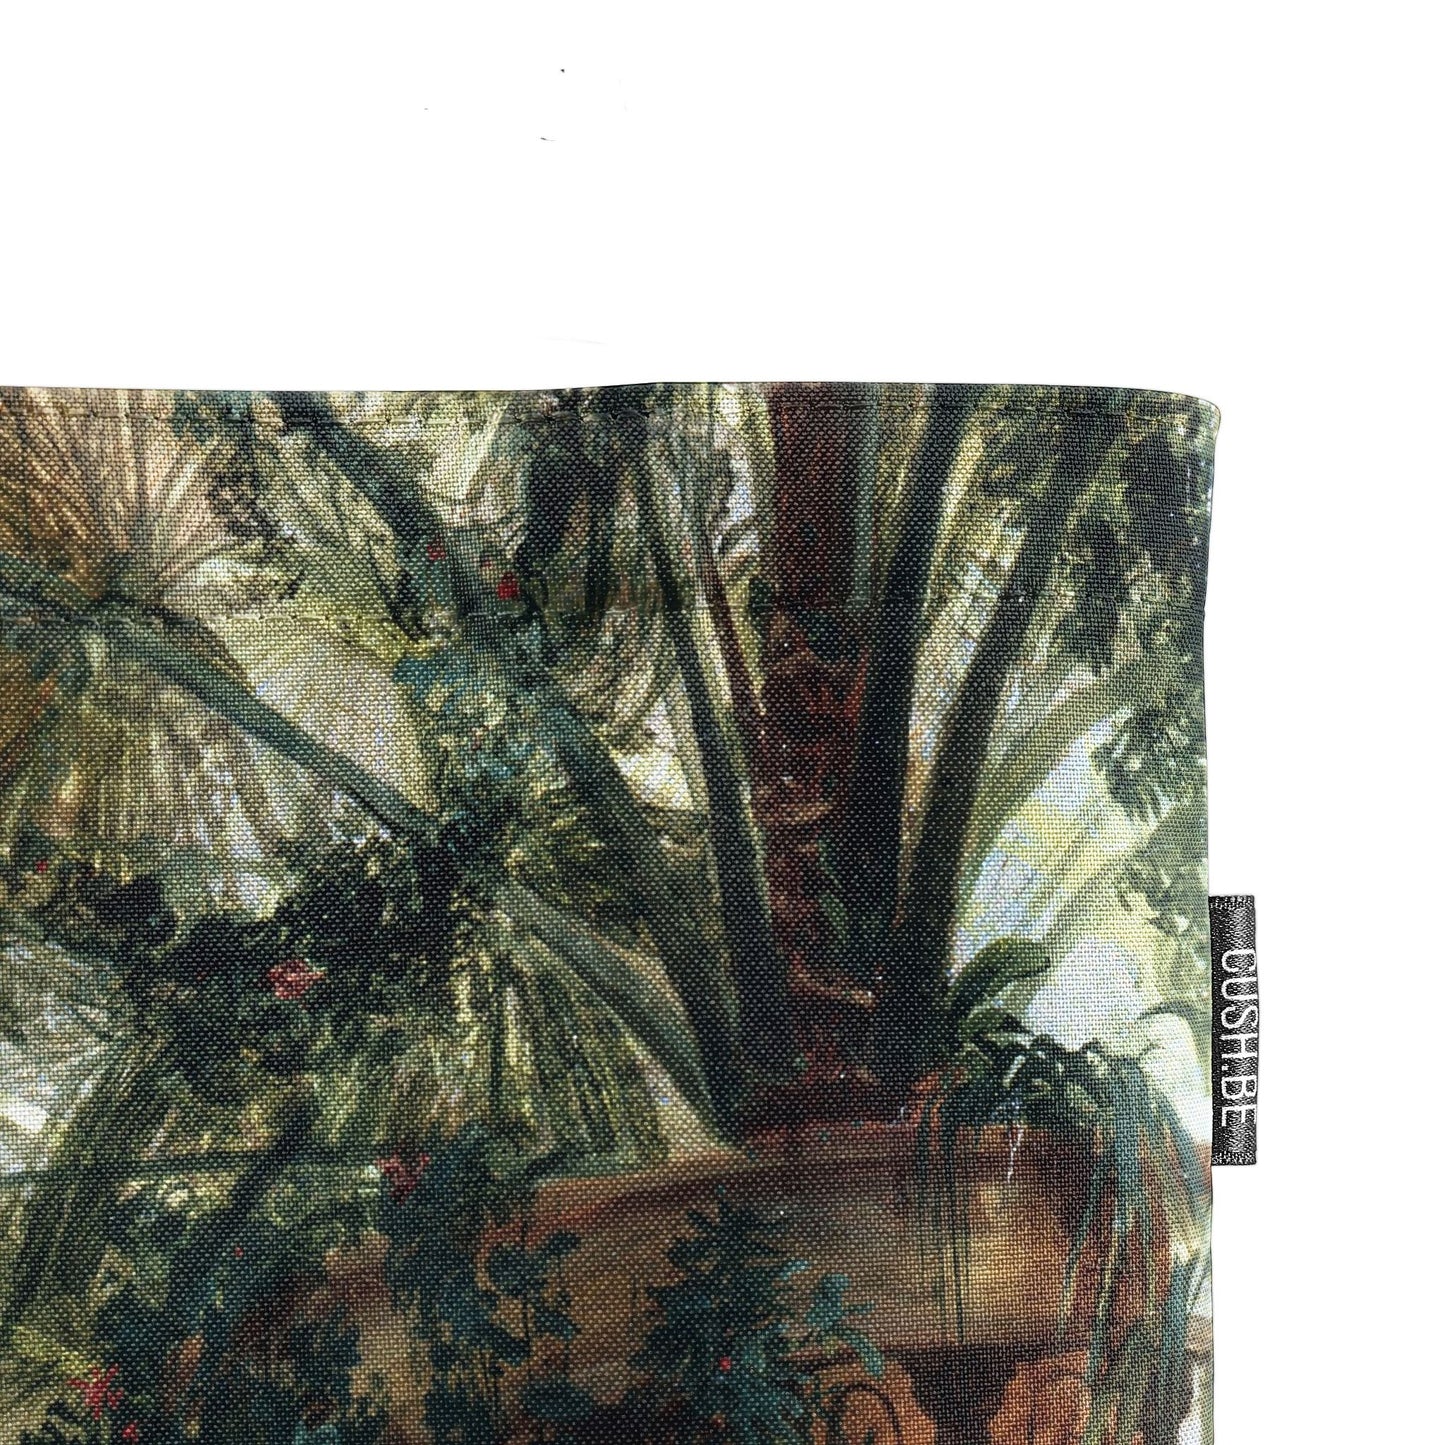 Голяма чанта Интериор на дом с палми на Карл Блехен